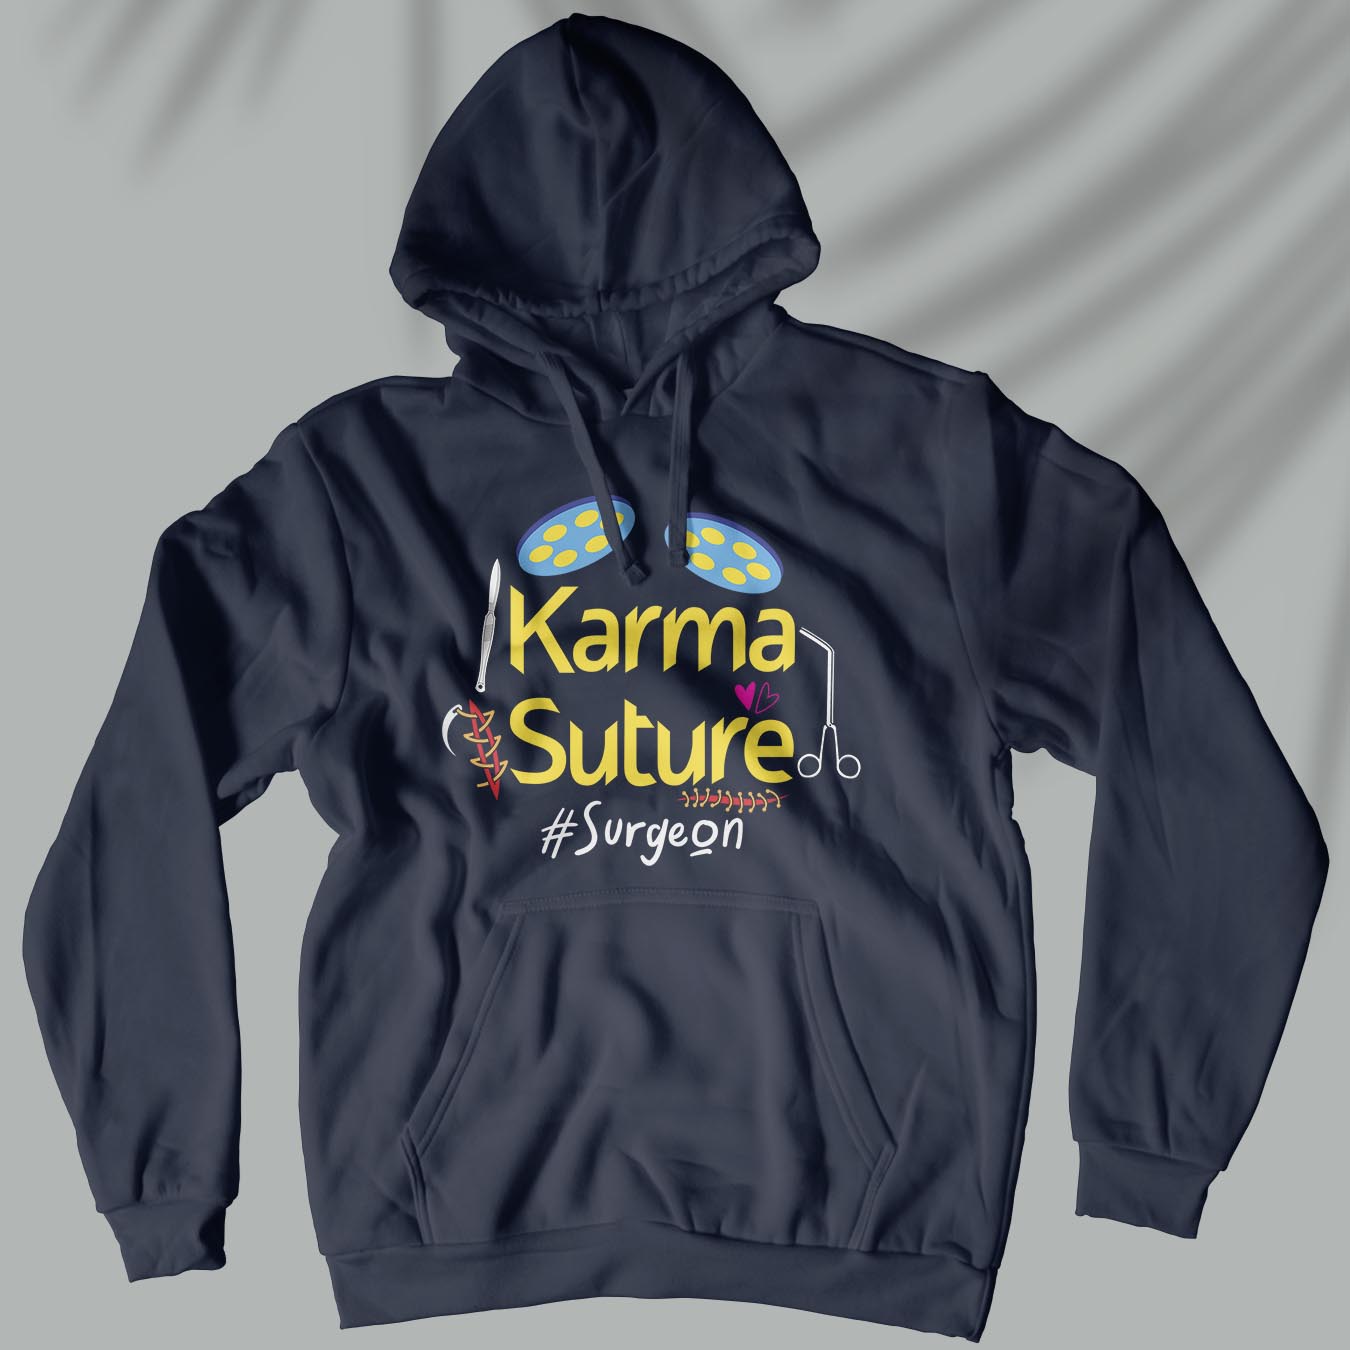 Karma Suture - Unisex Surgeon Hoodie